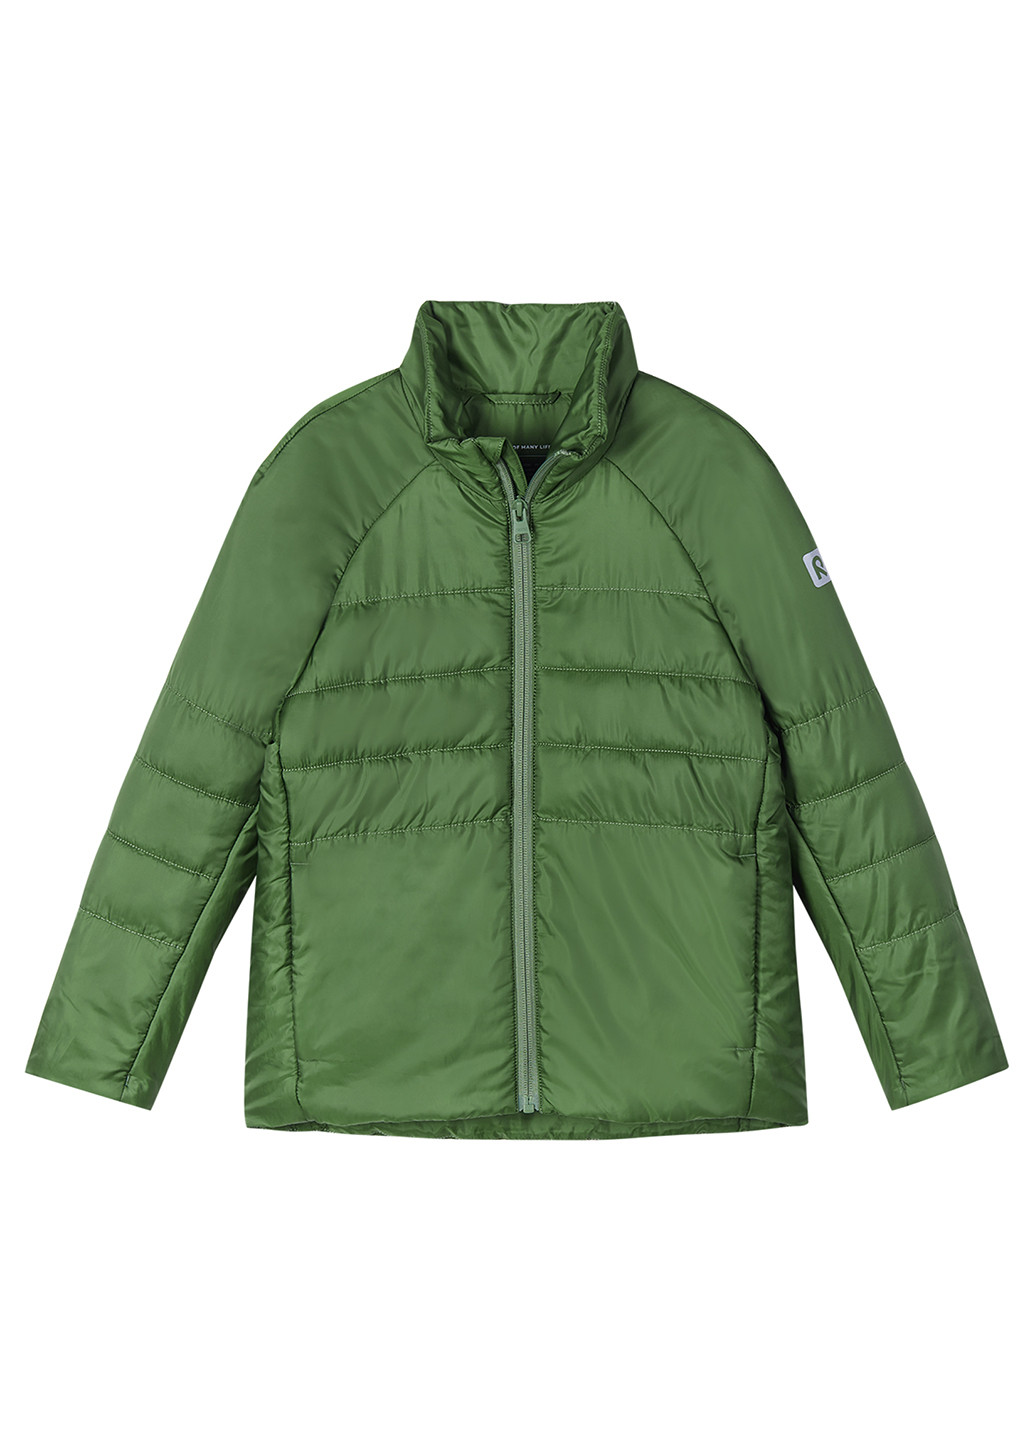 Зеленая демисезонная куртка утеплённая Reima Seuraan